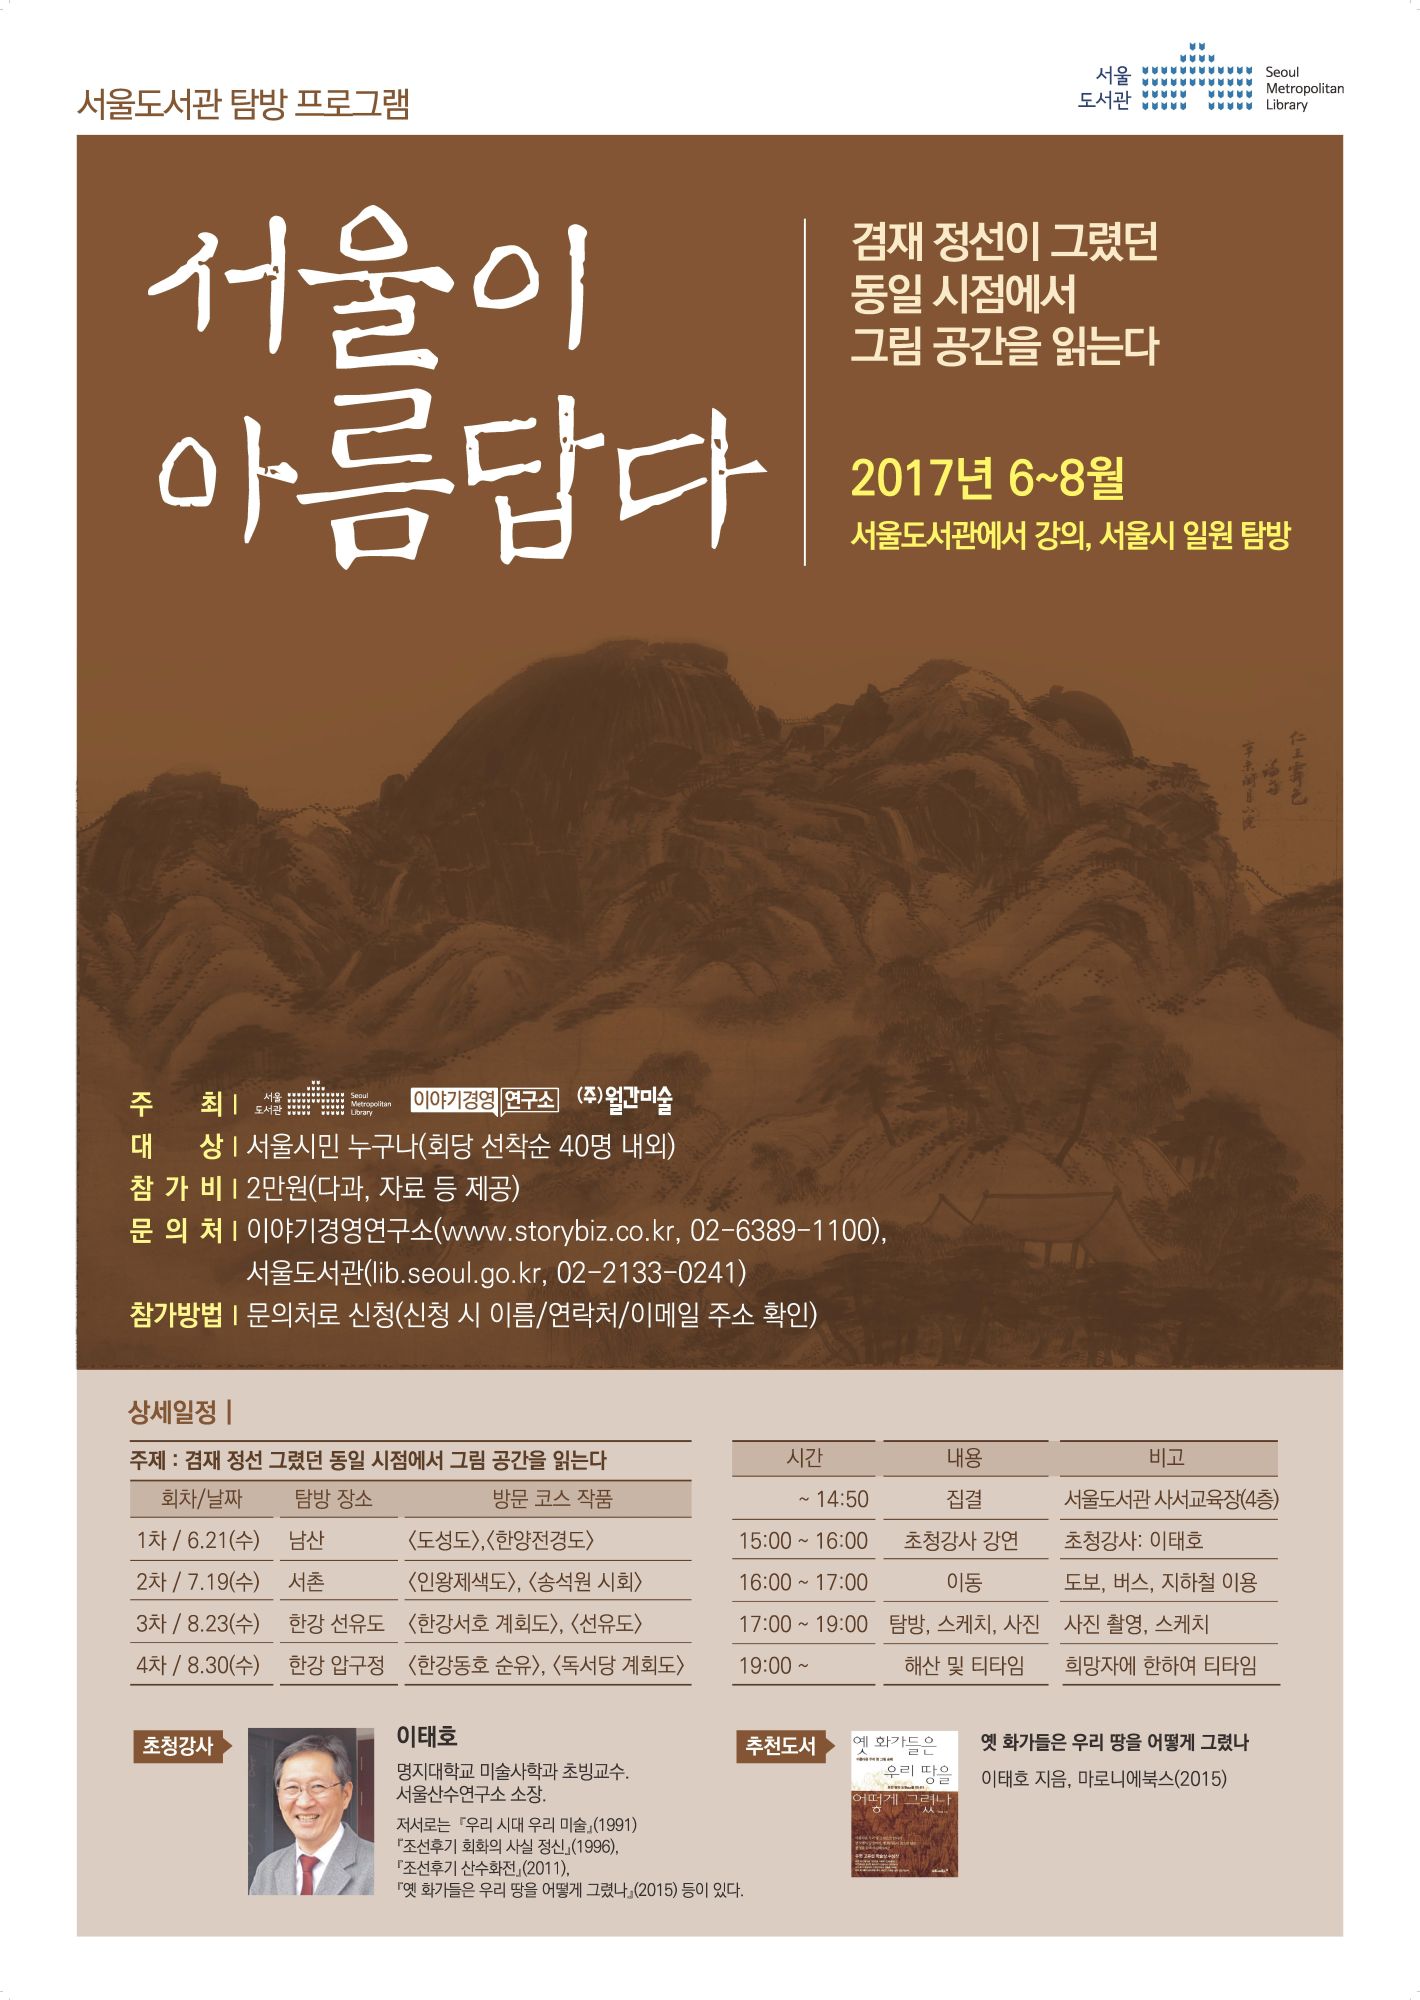 [탐방] 서울이 아름답다 2회 탐방 참가자 모집(인왕제색도 관련 서촌 탐방) 포스터